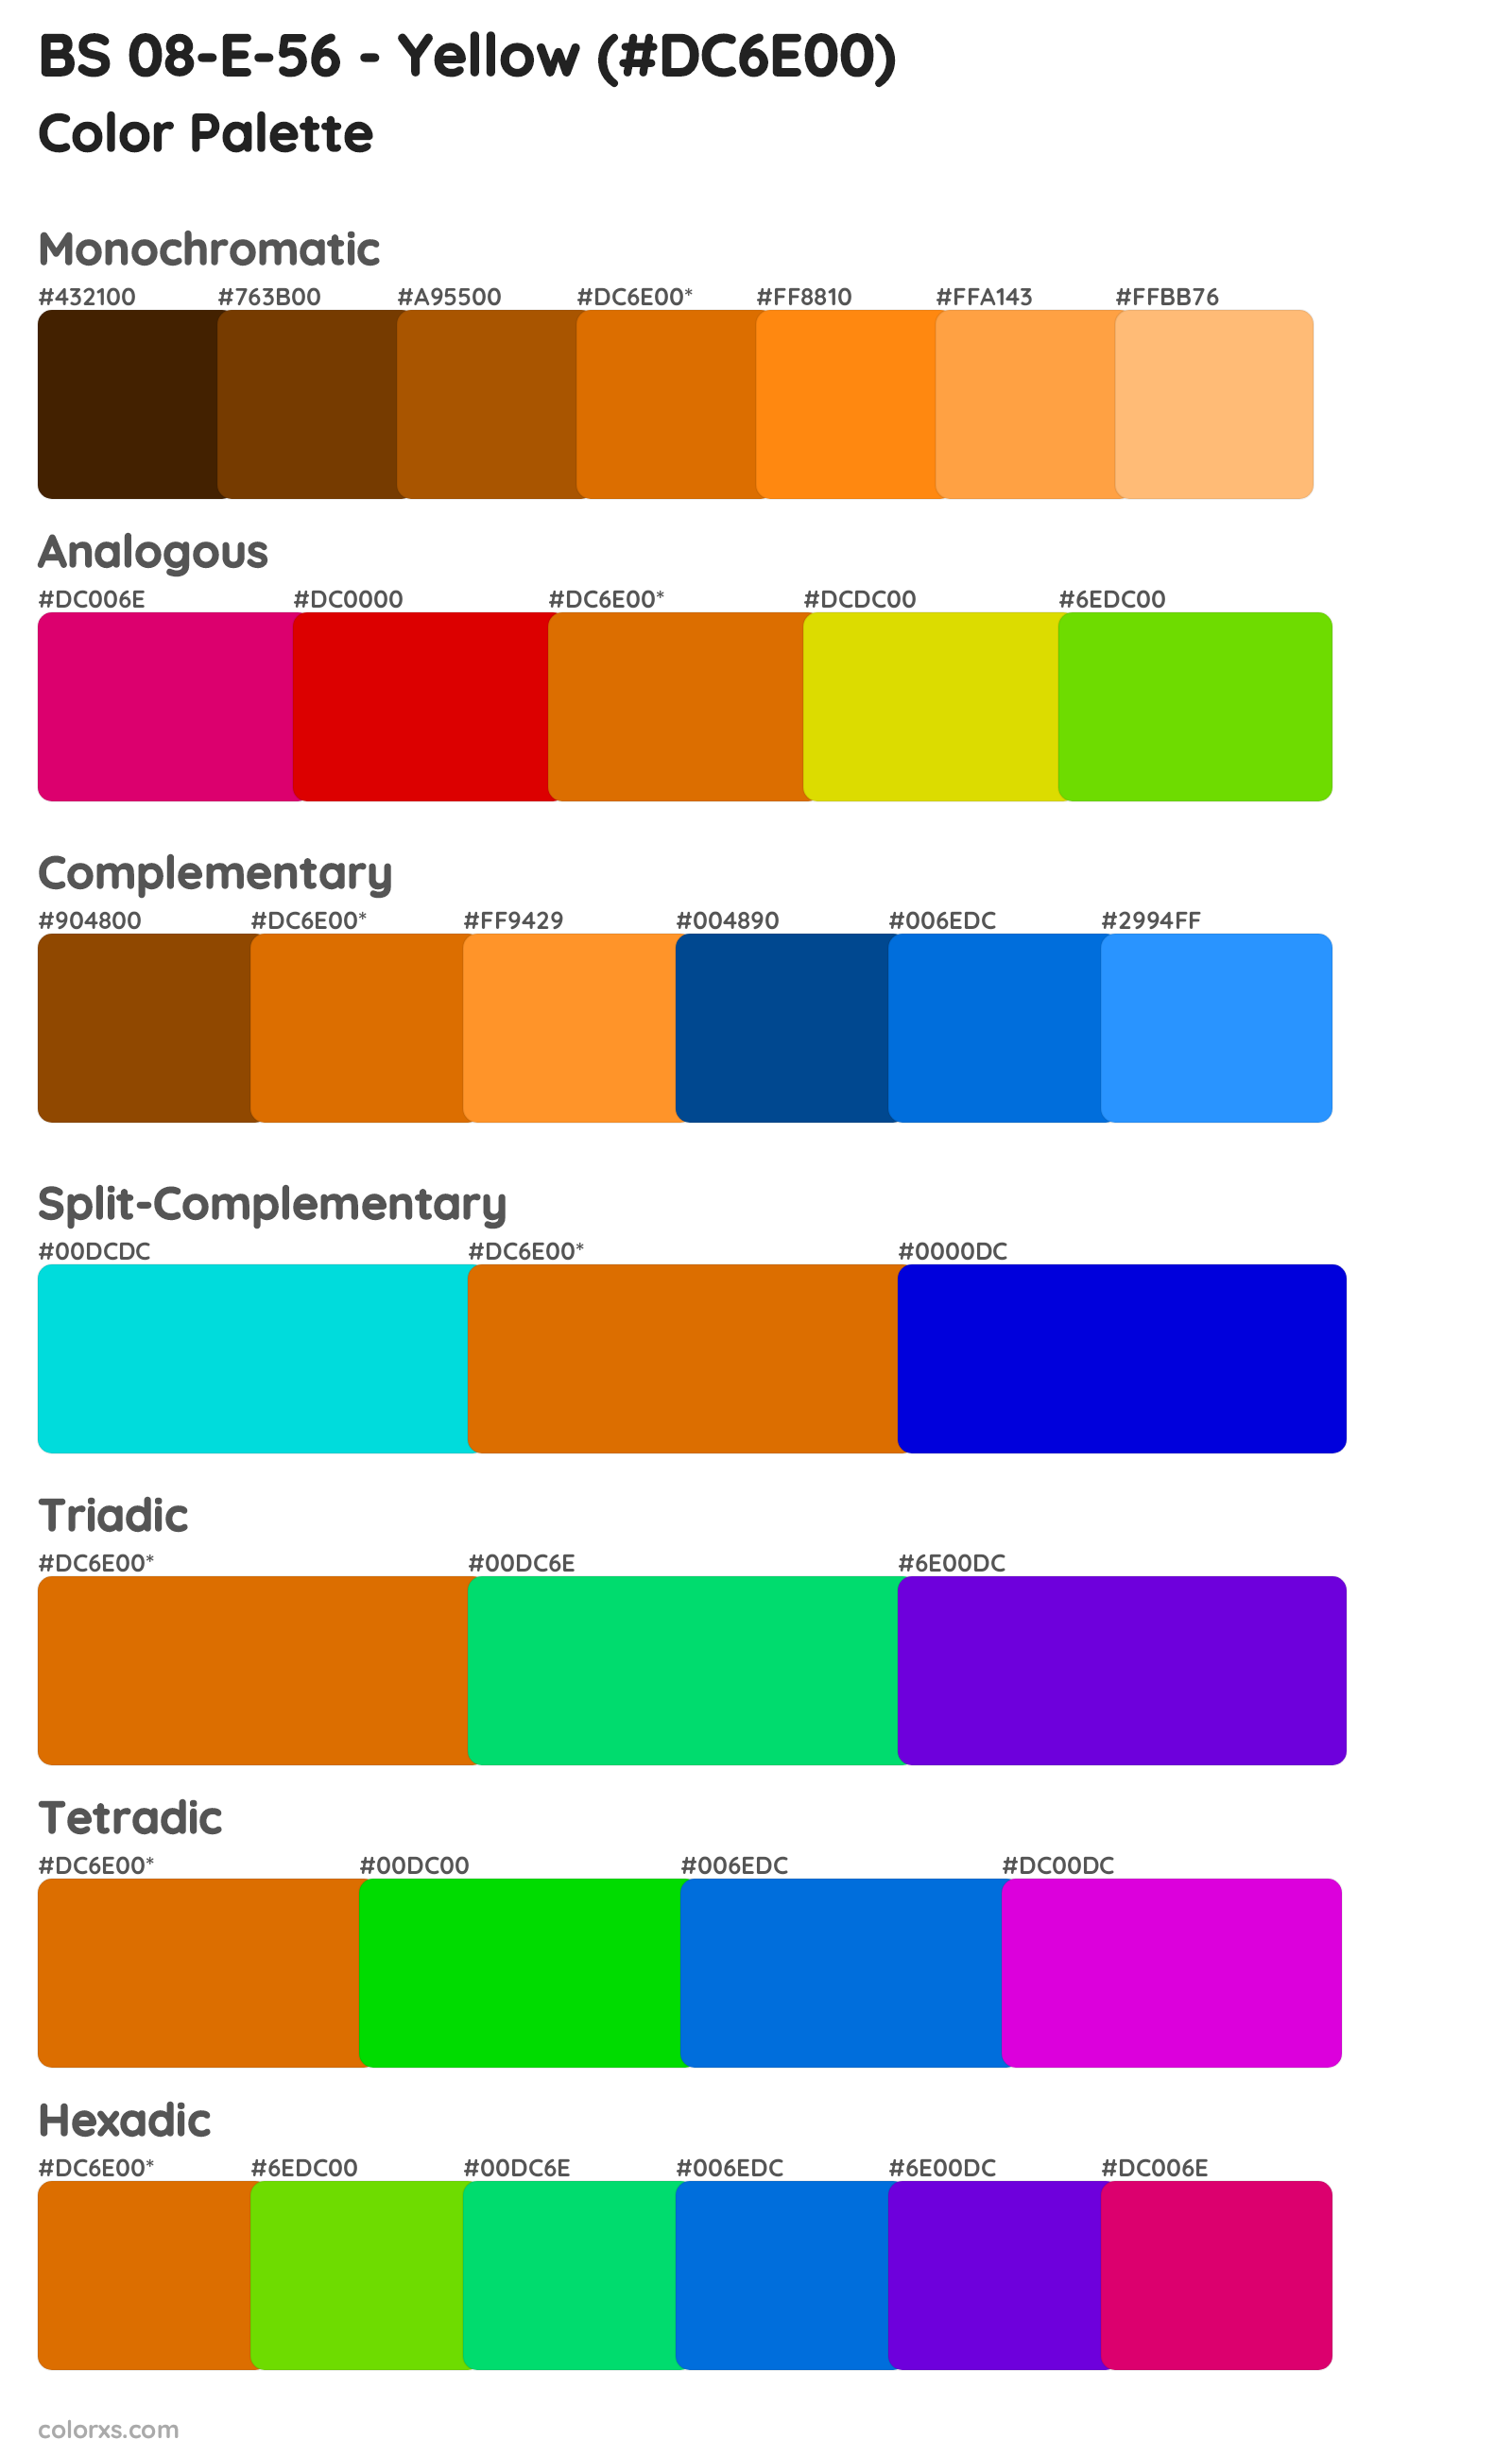 BS 08-E-56 - Yellow Color Scheme Palettes